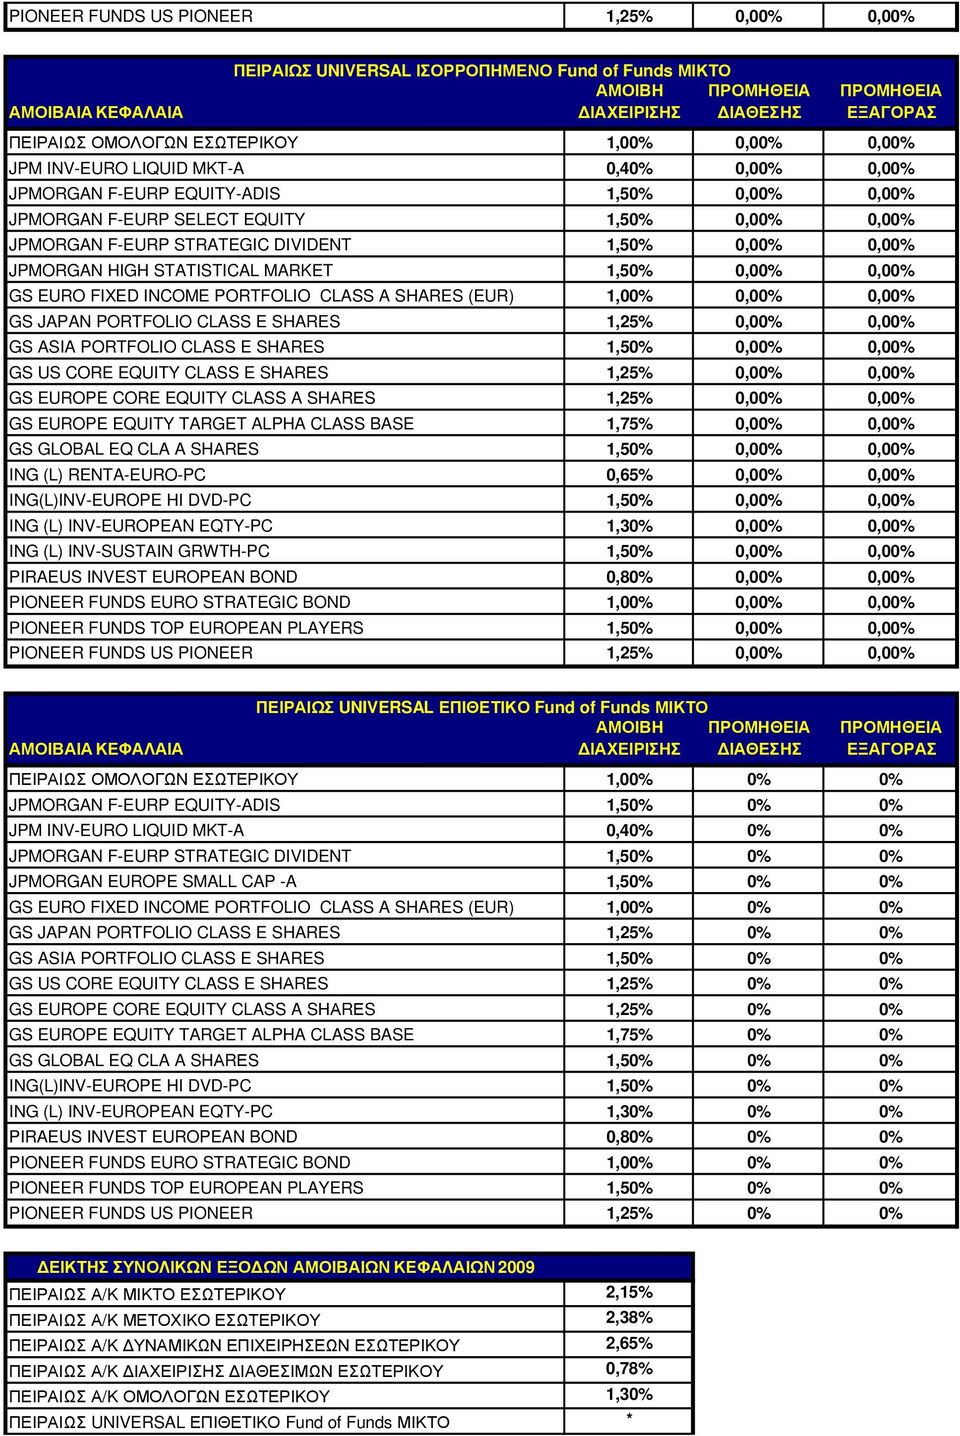 GS EURO FIXED INCOME PORTFOLIO CLASS A SHARES (EUR) 1,00% 0,00% 0,00% GS JAPAN PORTFOLIO CLASS E SHARES 1,25% 0,00% 0,00% GS ASIA PORTFOLIO CLASS E SHARES 1,50% 0,00% 0,00% GS US CORE EQUITY CLASS E